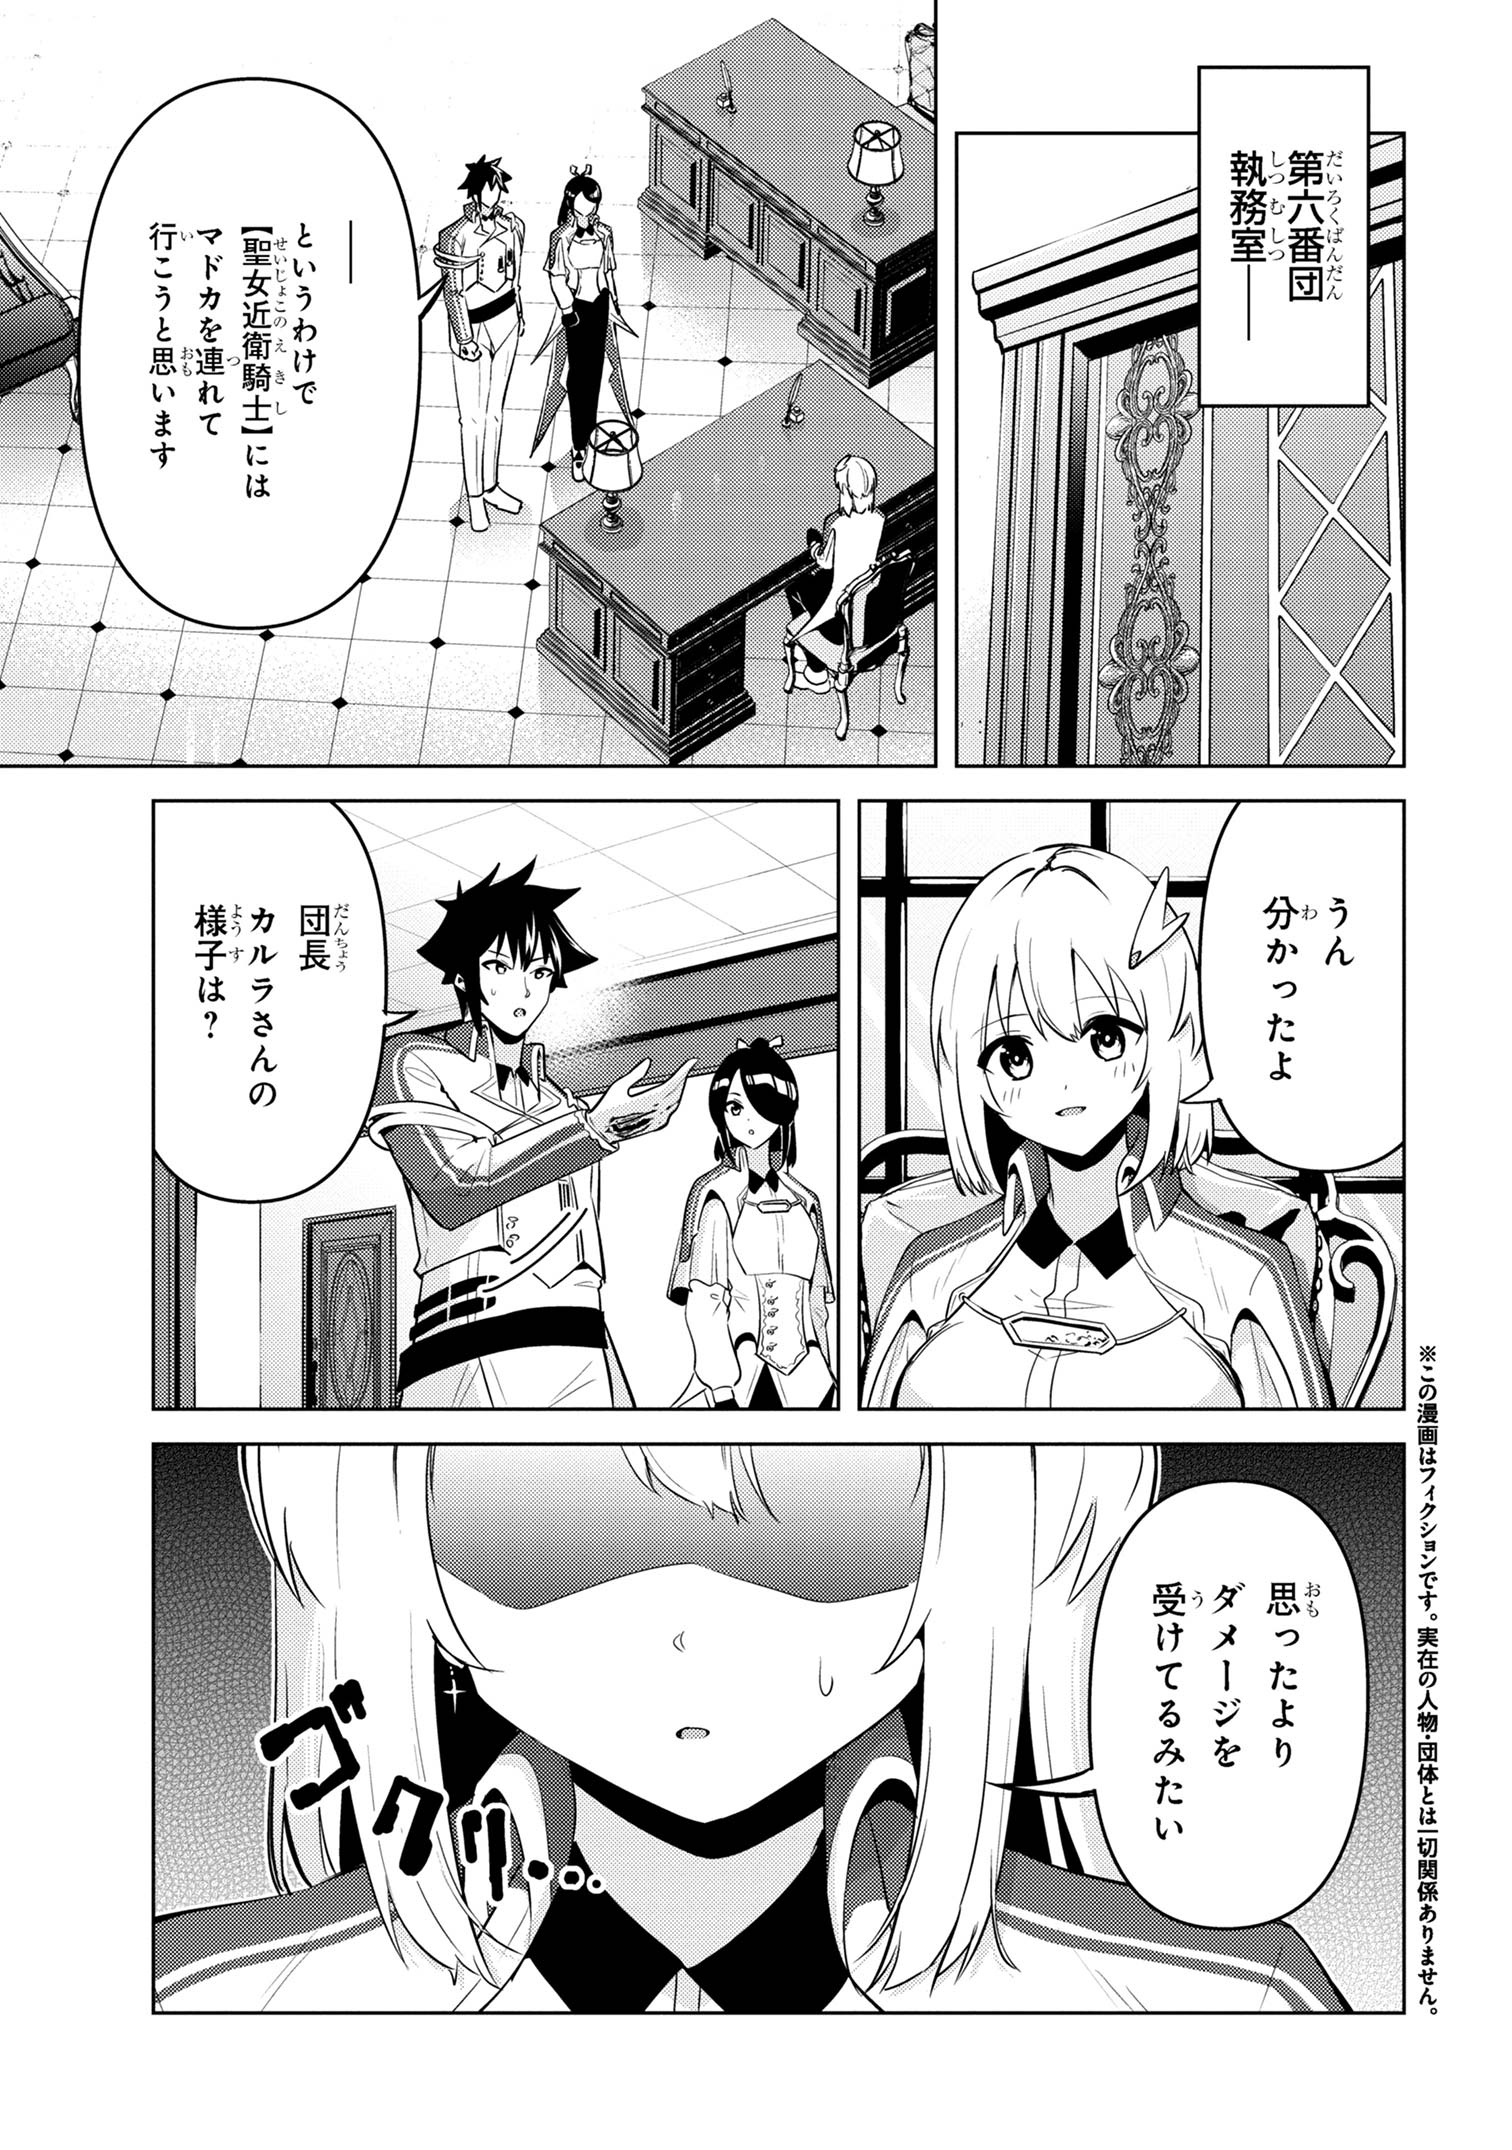 Sekishi ni Natta kedo Danchou no Oppai ga Sugosugite Kokoro ga Kiyomerarenai - Chapter 33 - Page 1